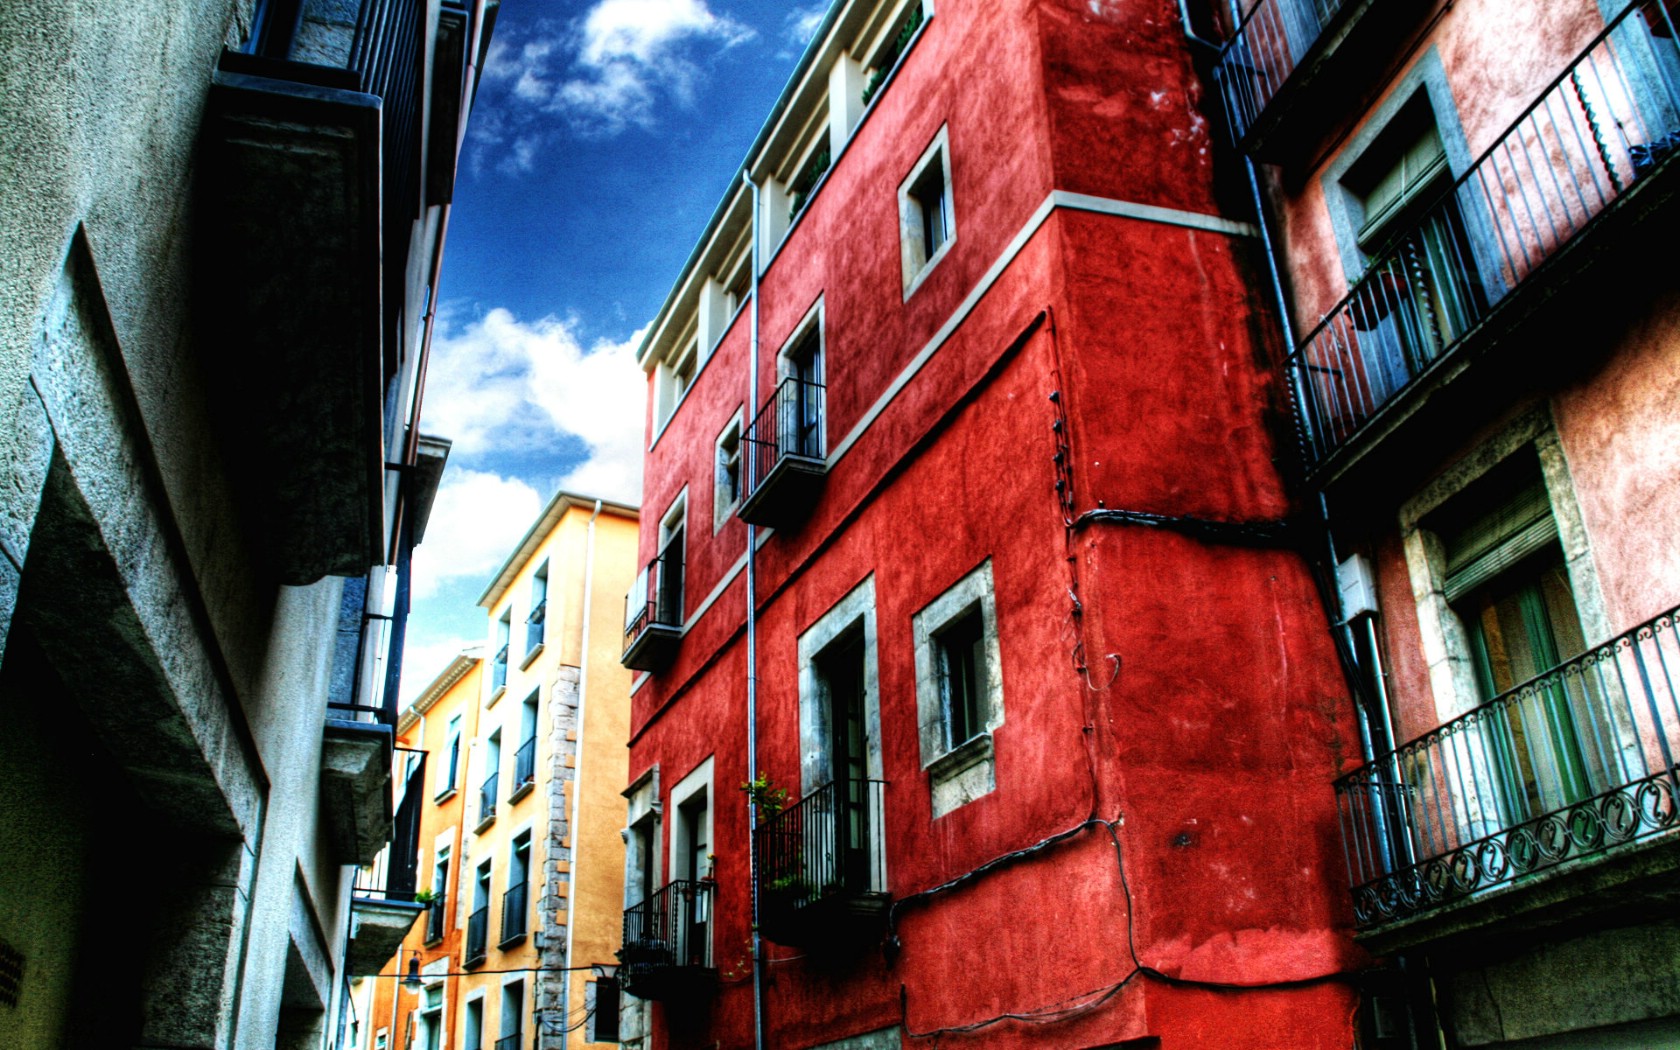 壁纸1680x1050HDR 西班牙城市映像 红房子 西班牙 Girona 赫罗纳城市风景壁纸 HDR 西班牙城市映像壁纸 HDR 西班牙城市映像图片 HDR 西班牙城市映像素材 人文壁纸 人文图库 人文图片素材桌面壁纸